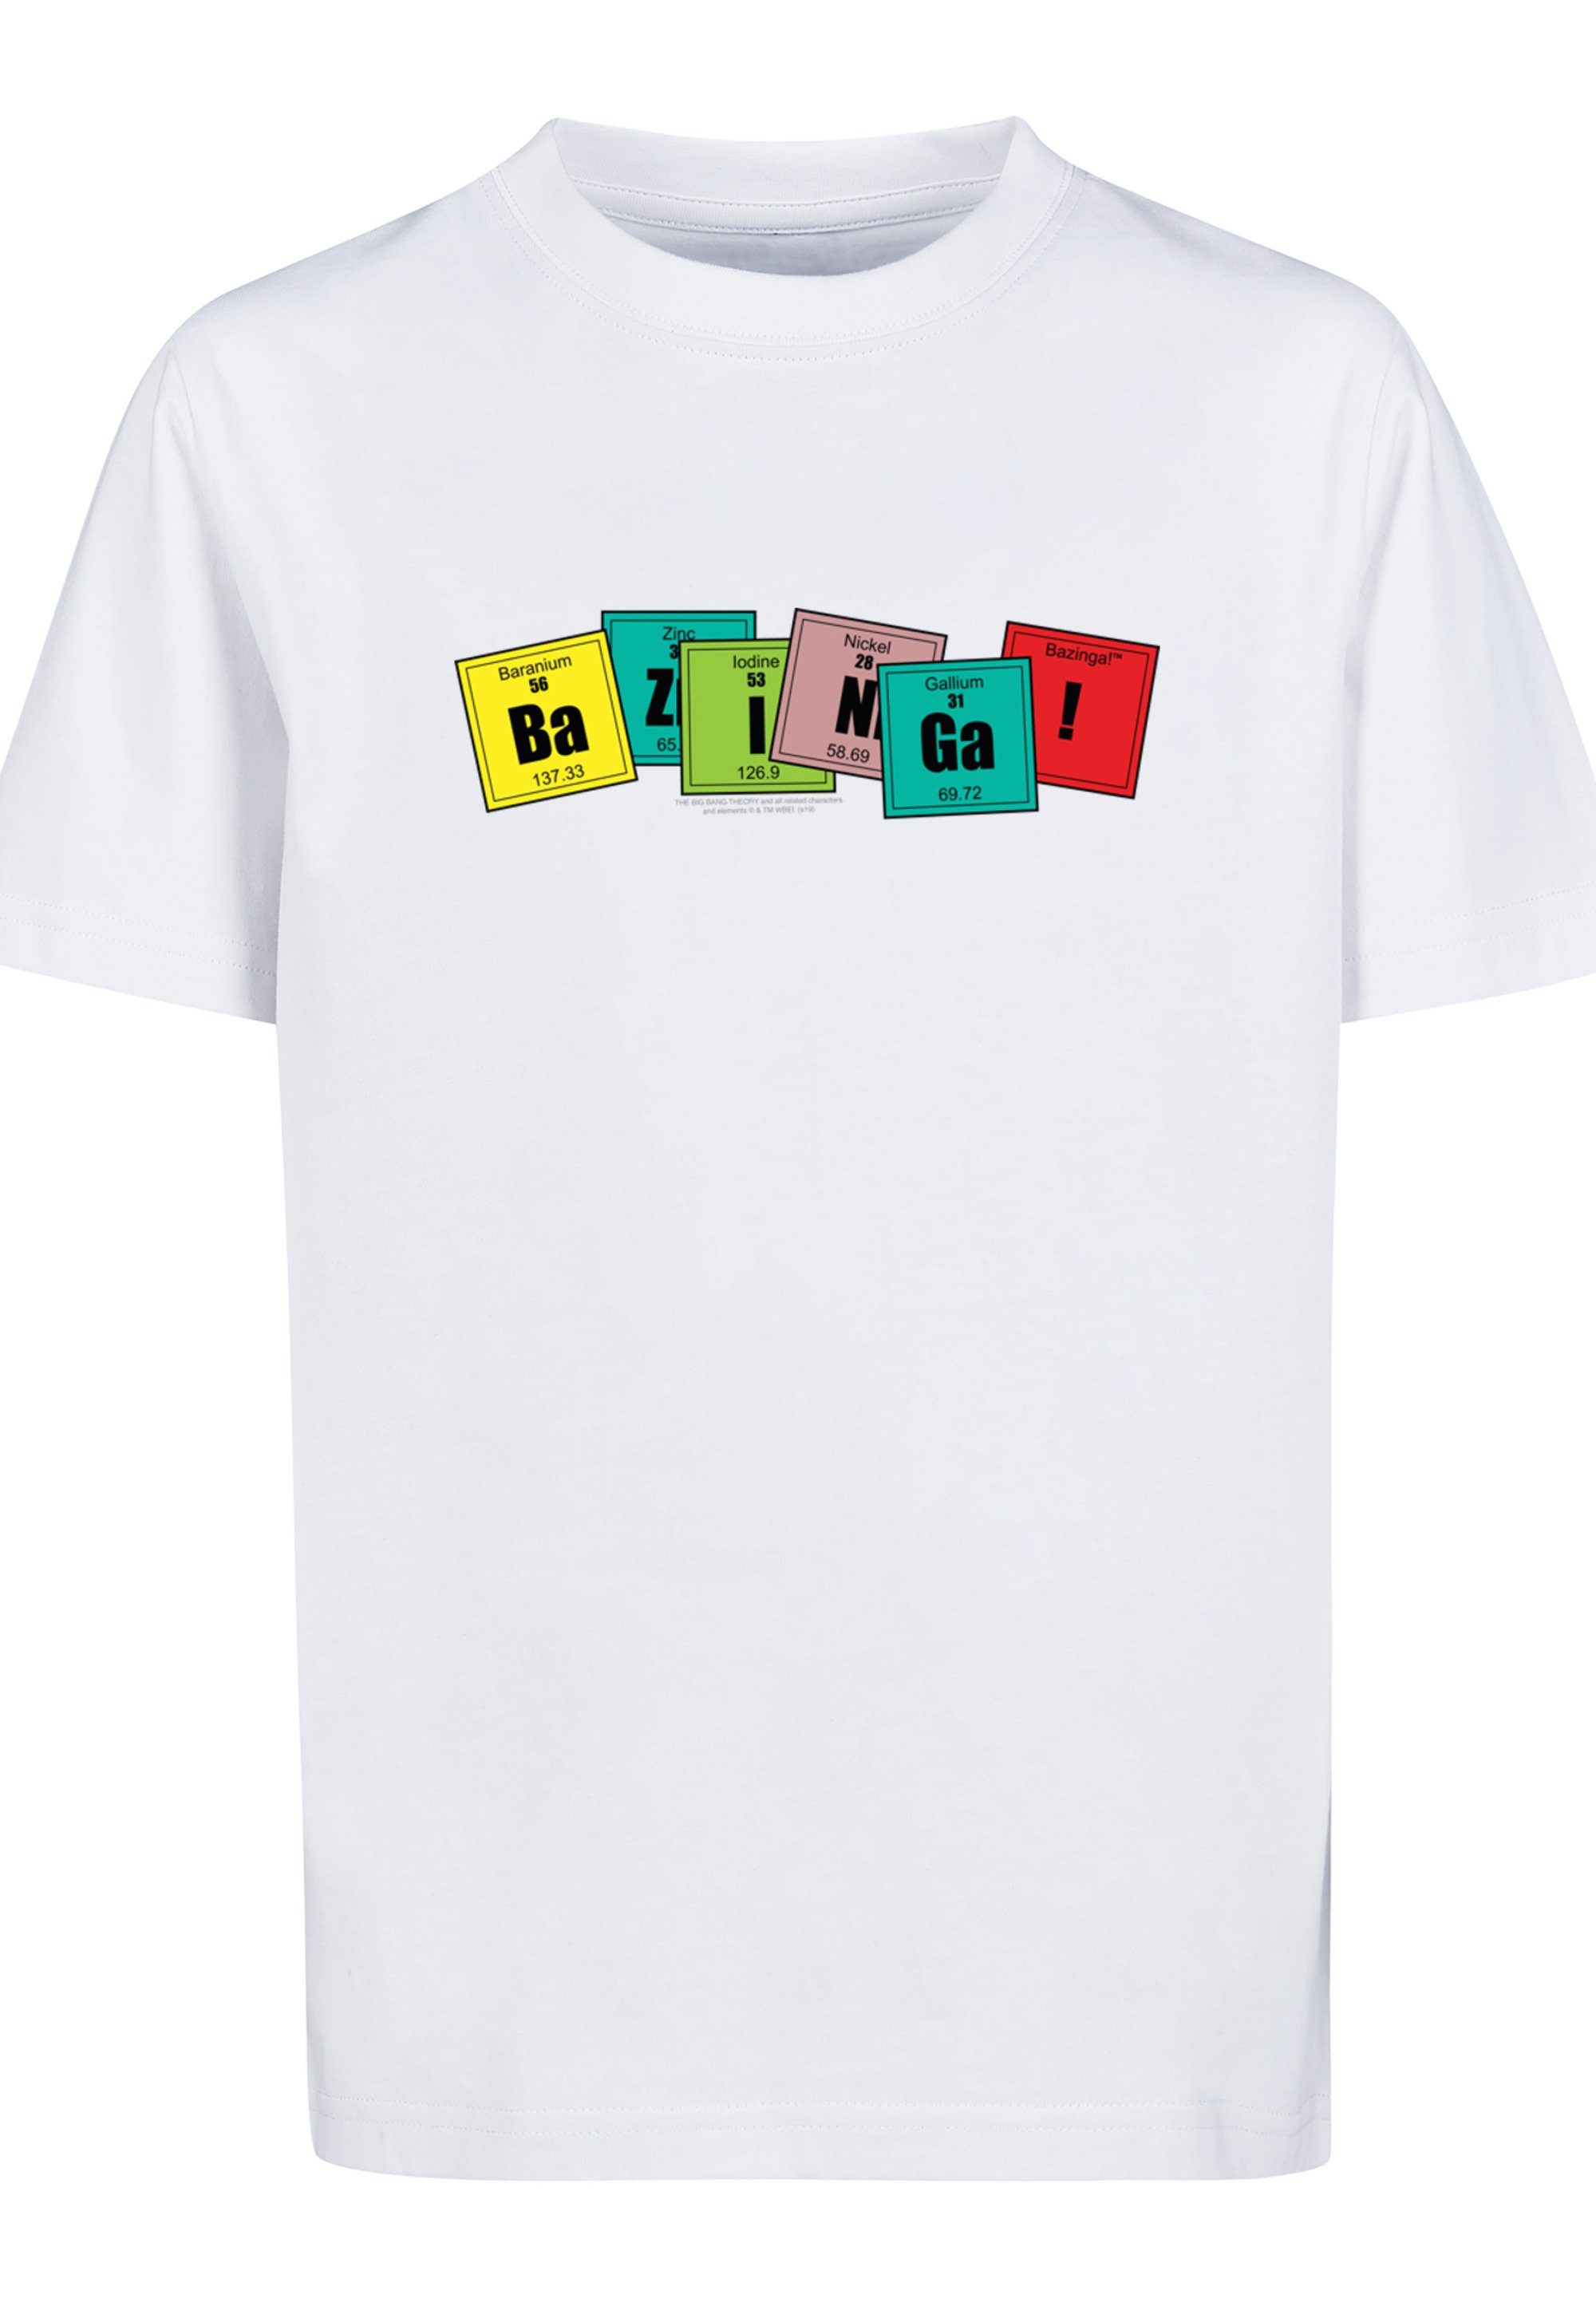 F4NT4STIC T-Shirt Big Bang Theory Bazinga Unisex Kinder,Premium Merch,Jungen ,Mädchen,Bedruckt